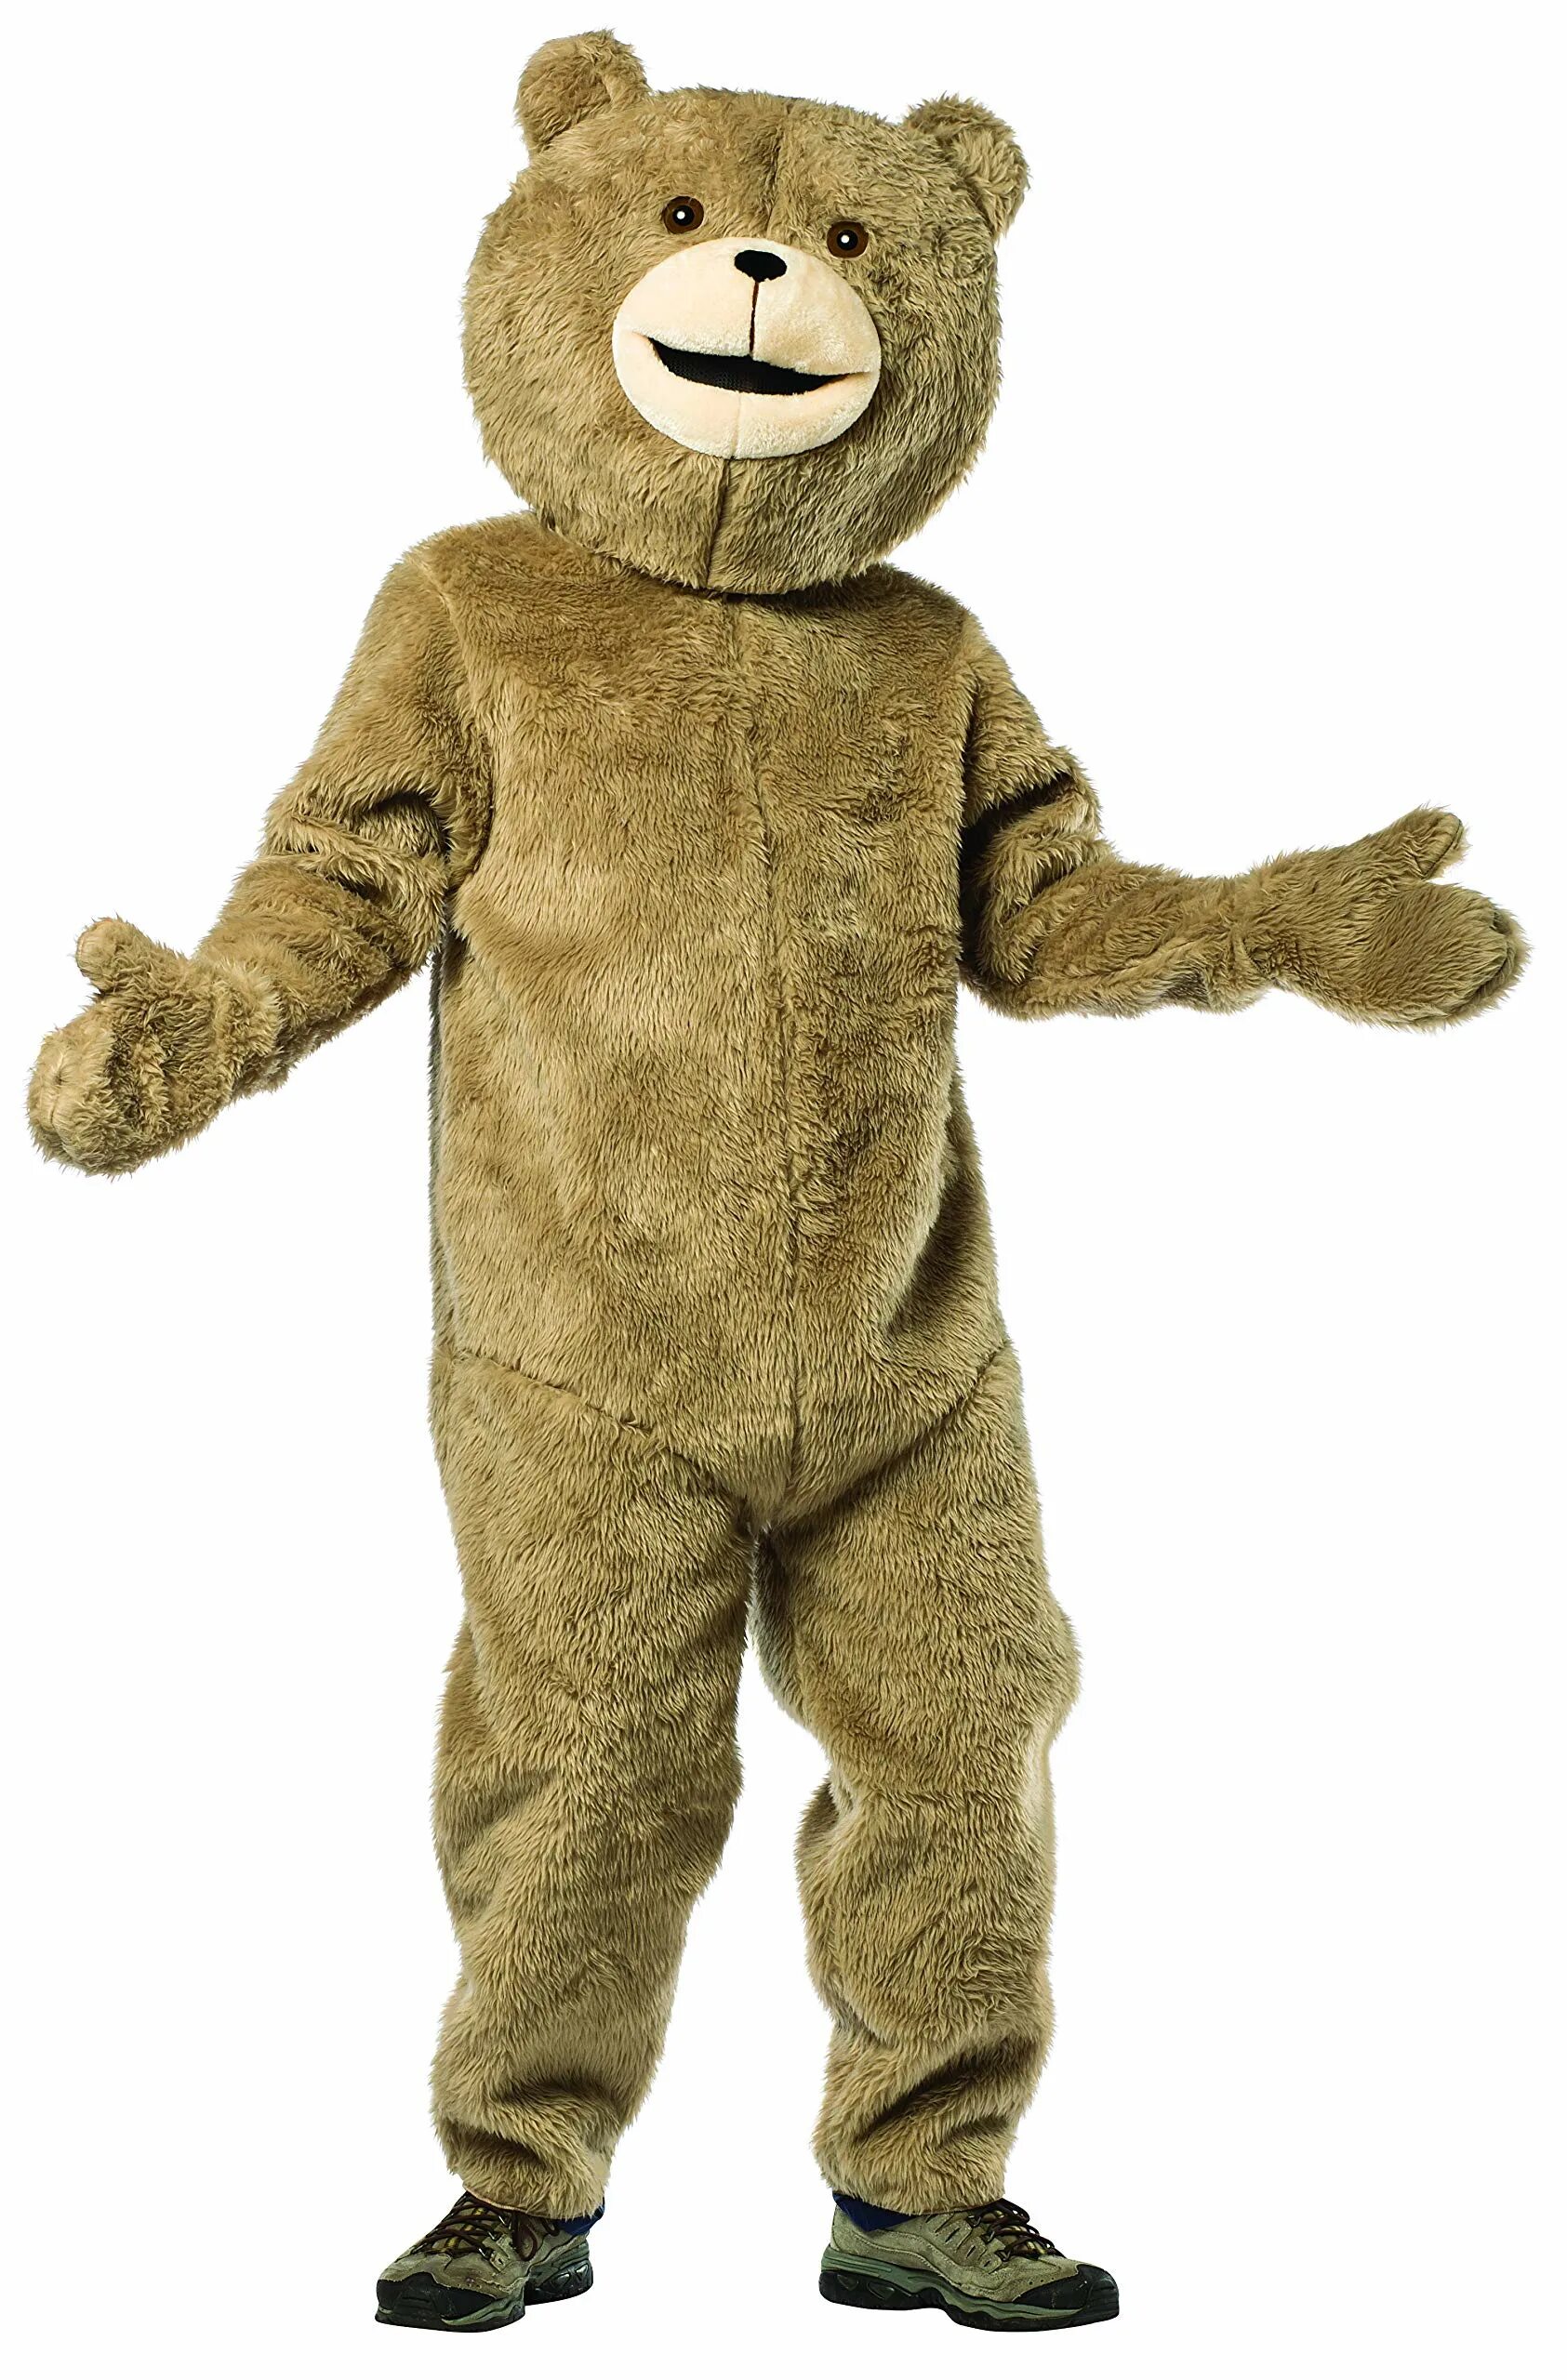 Мишка Kostyum Teddy. Костюм плюшевого медведя взрослый. Плюшевый костюм. Костюм медвежонка взрослый. Аренда костюма медведя